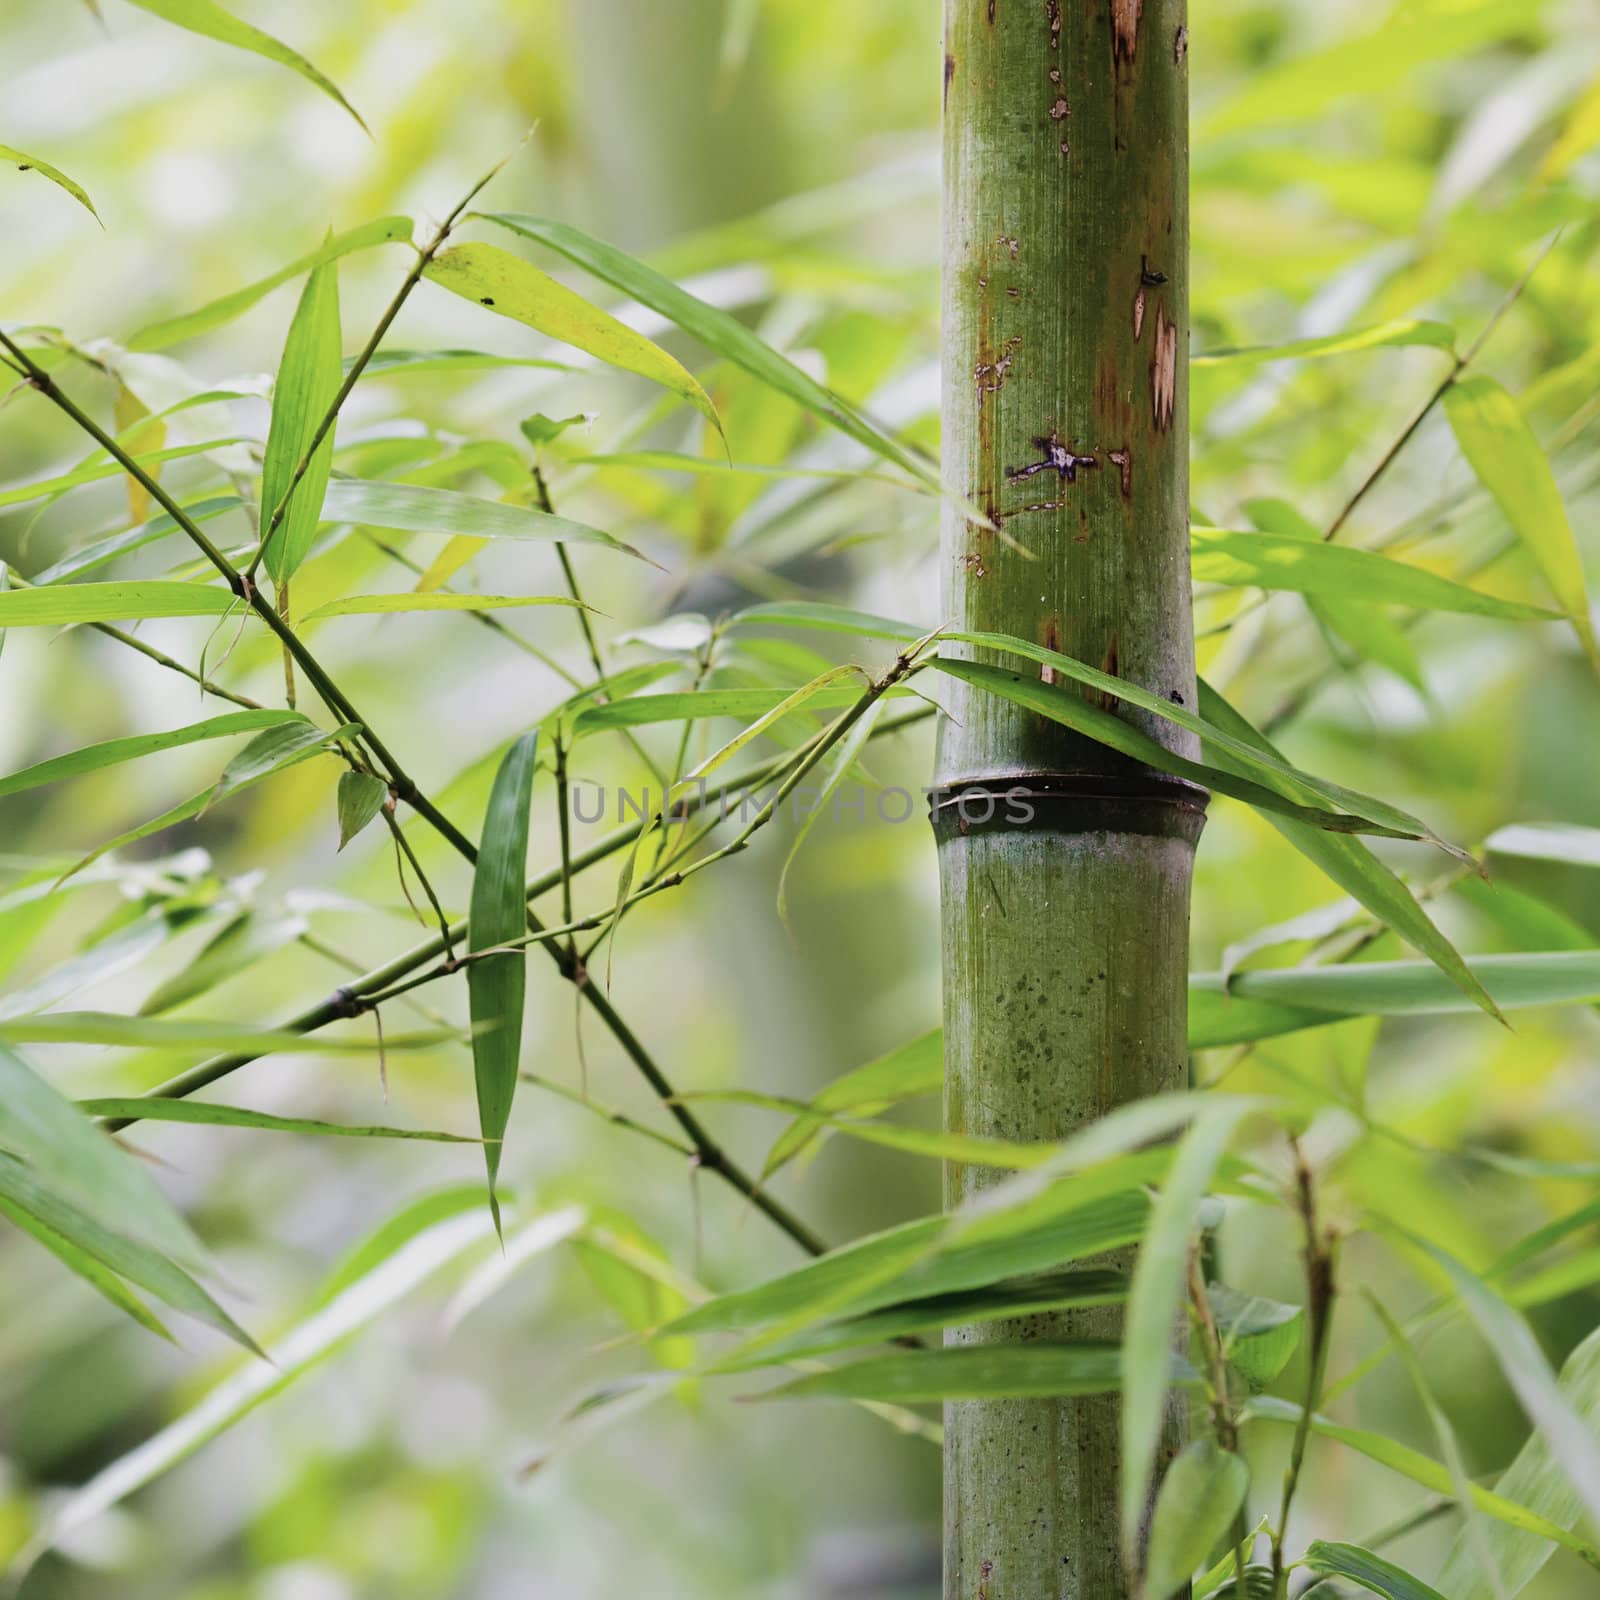 green bamboo groves in a garden by jackq